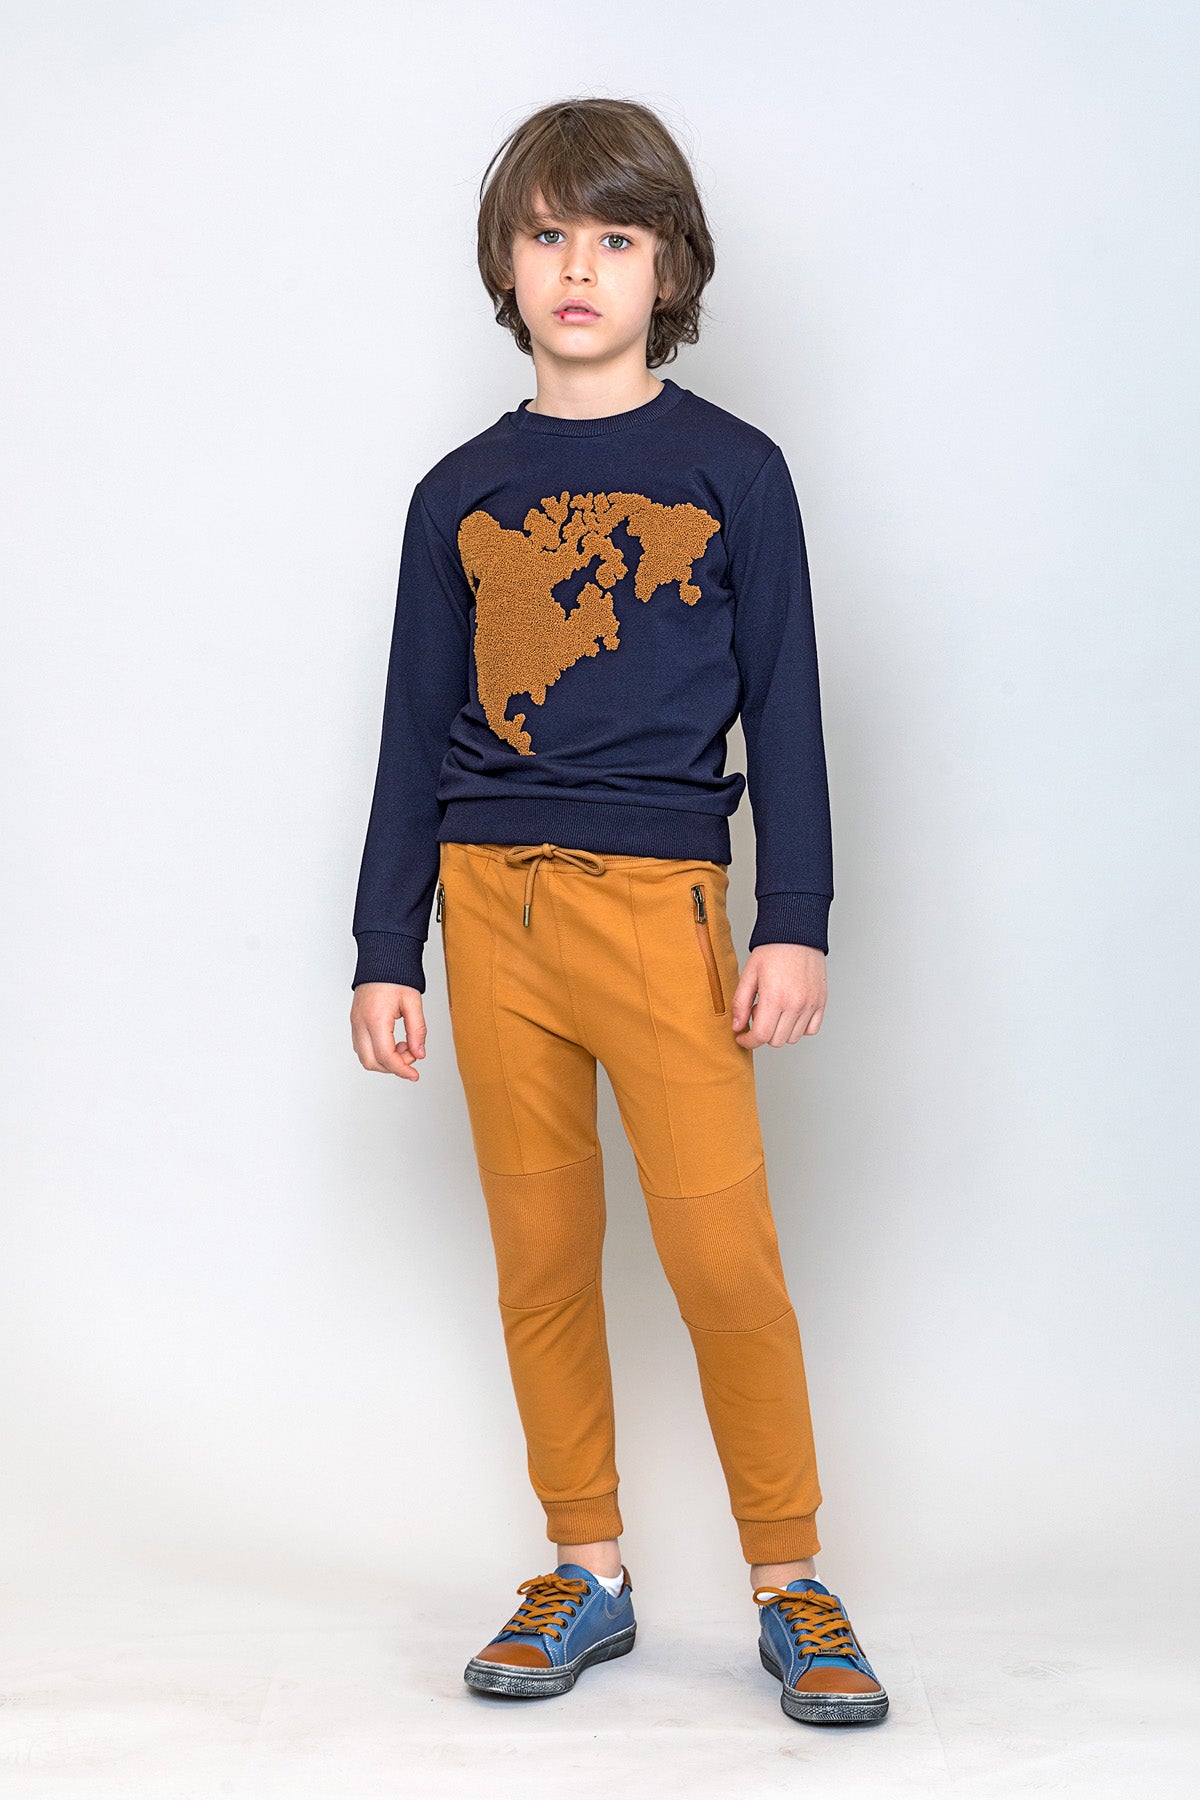 InCity Kids Erkek Çocuk Peluş Kuzey Amerika Haritası Detaylı Sweatshirt